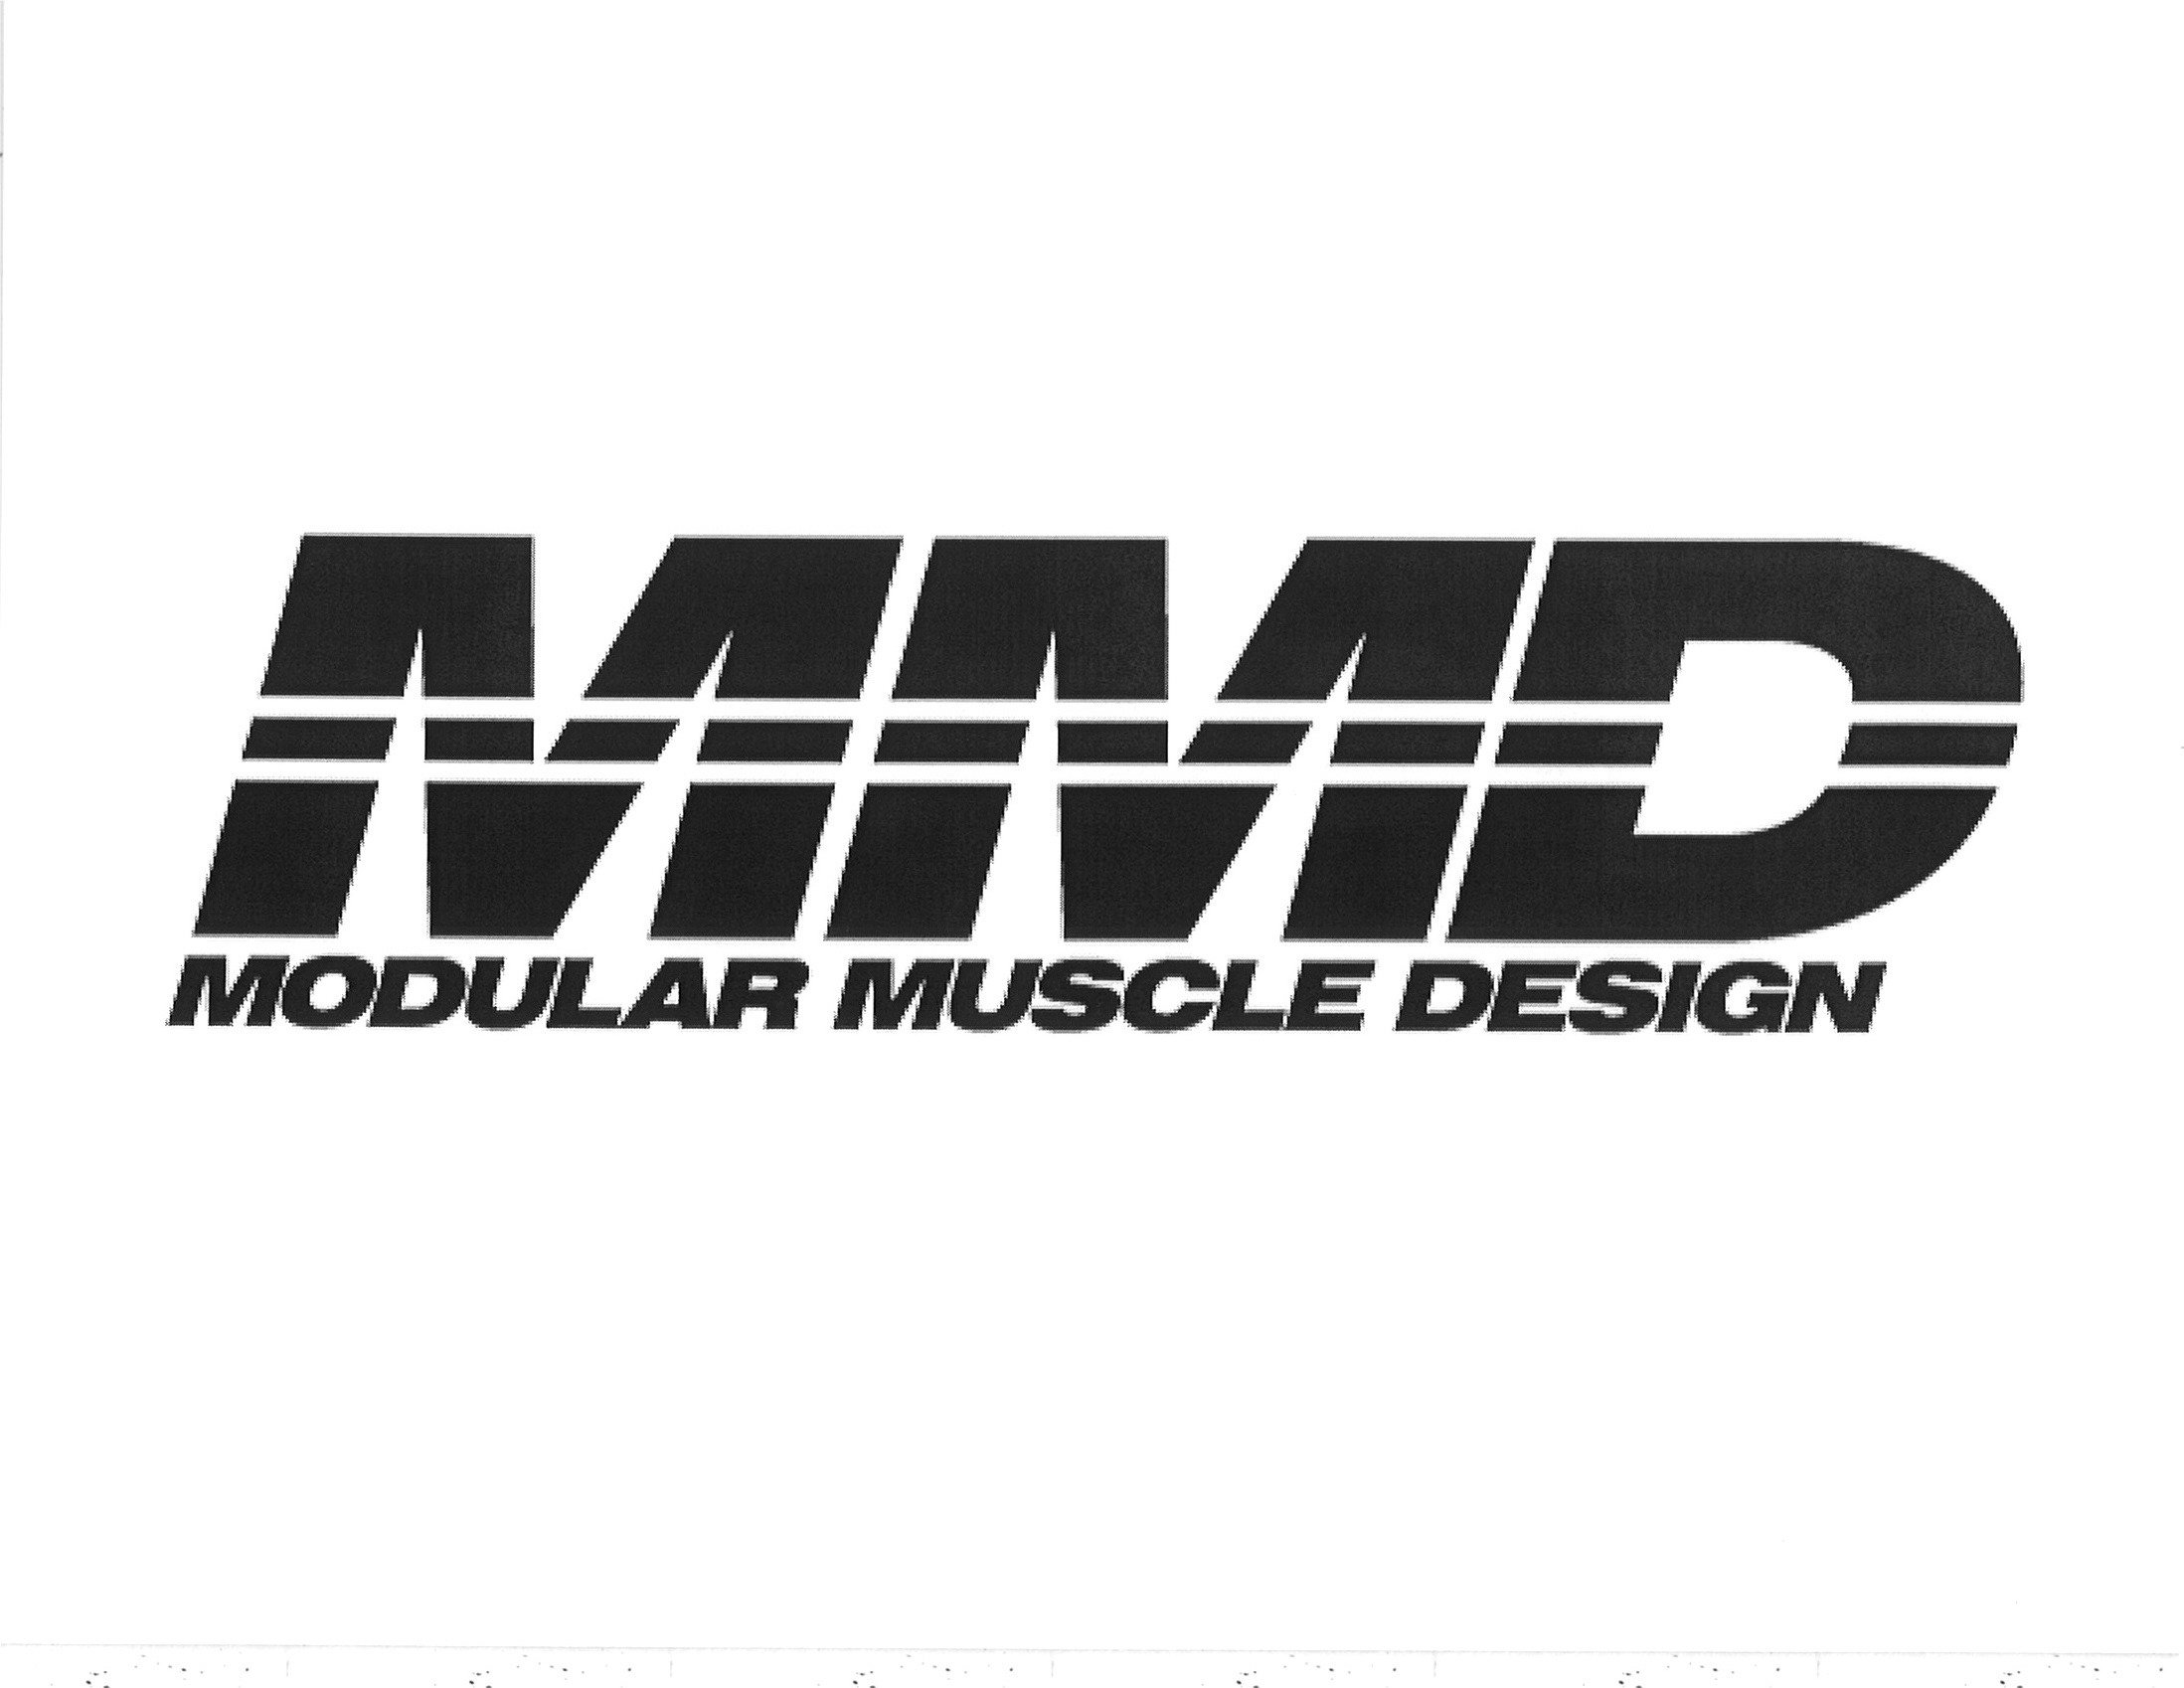  MMD MODULAR MUSCLE DESIGN